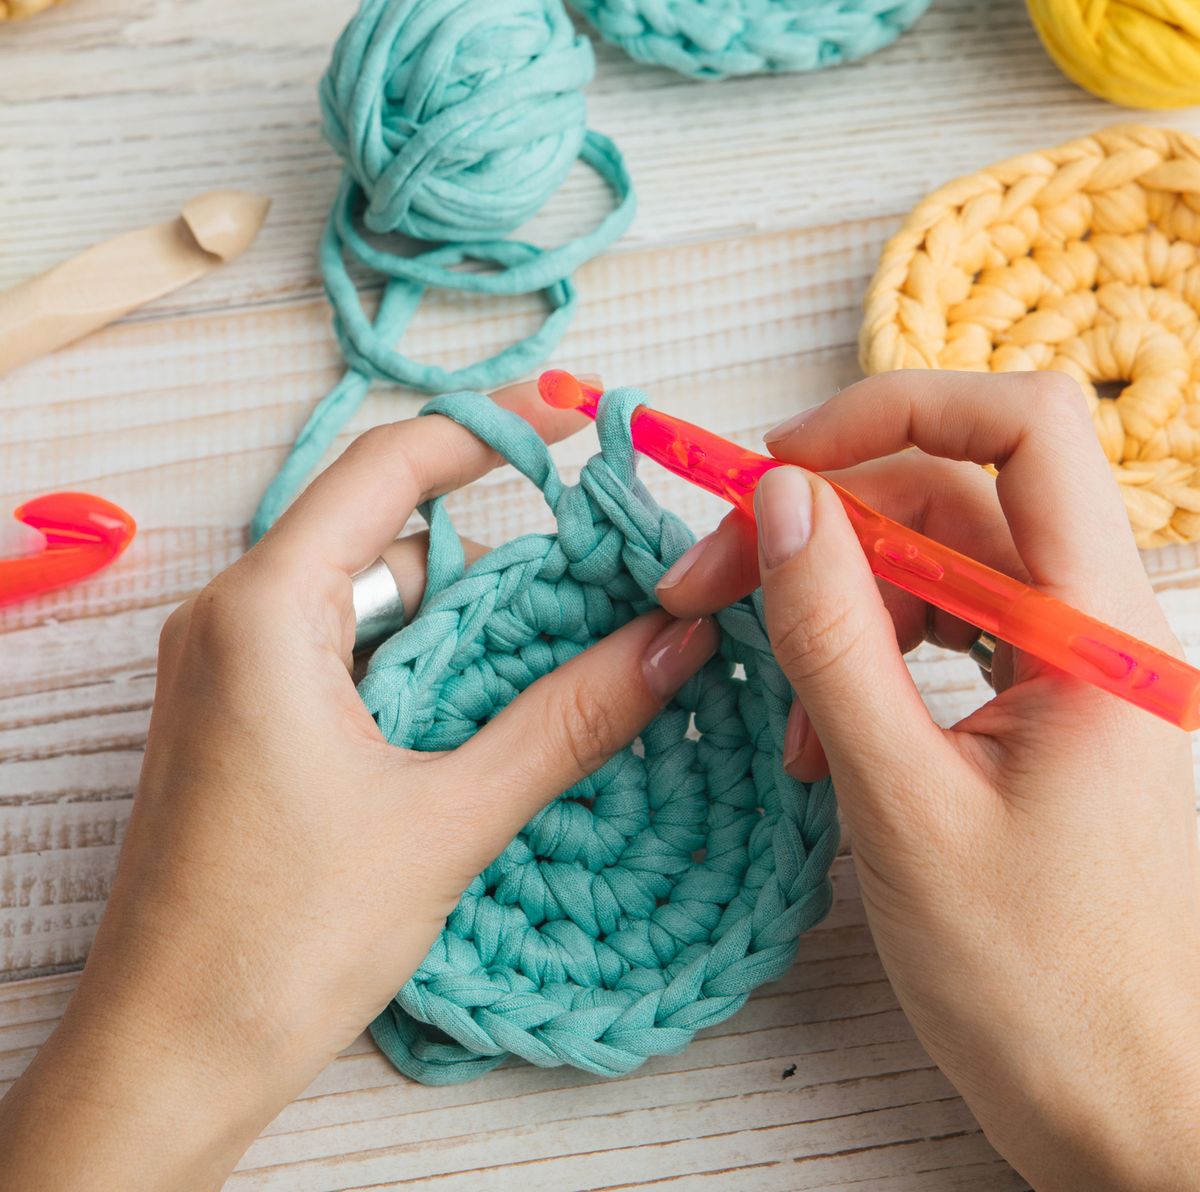 Wooden Multi Set of 11 Crochet Hooks Set 3.5mm to 10 Mm Hand Turned  Ergonomic Crochet Hooks for Knitting Crocheting Accessories for Gift 